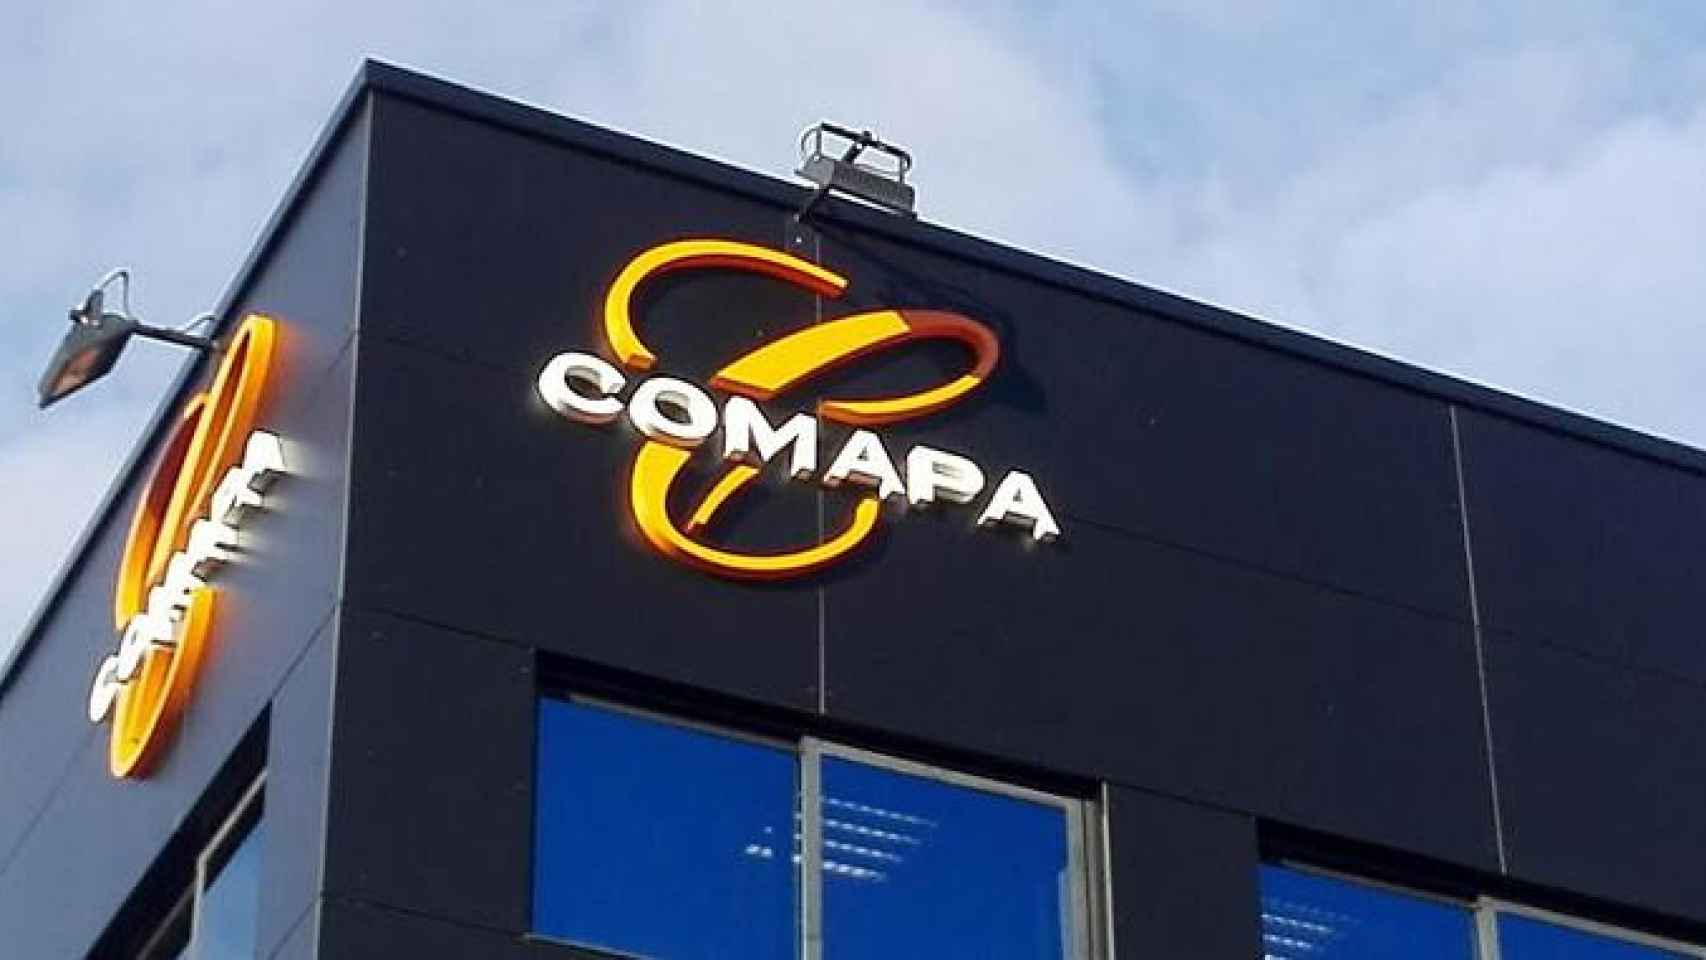 Sede del Grupo Comapa, el gigante jamonero, líder español en producción y distribución de jamón curado, cocidos y embutidos